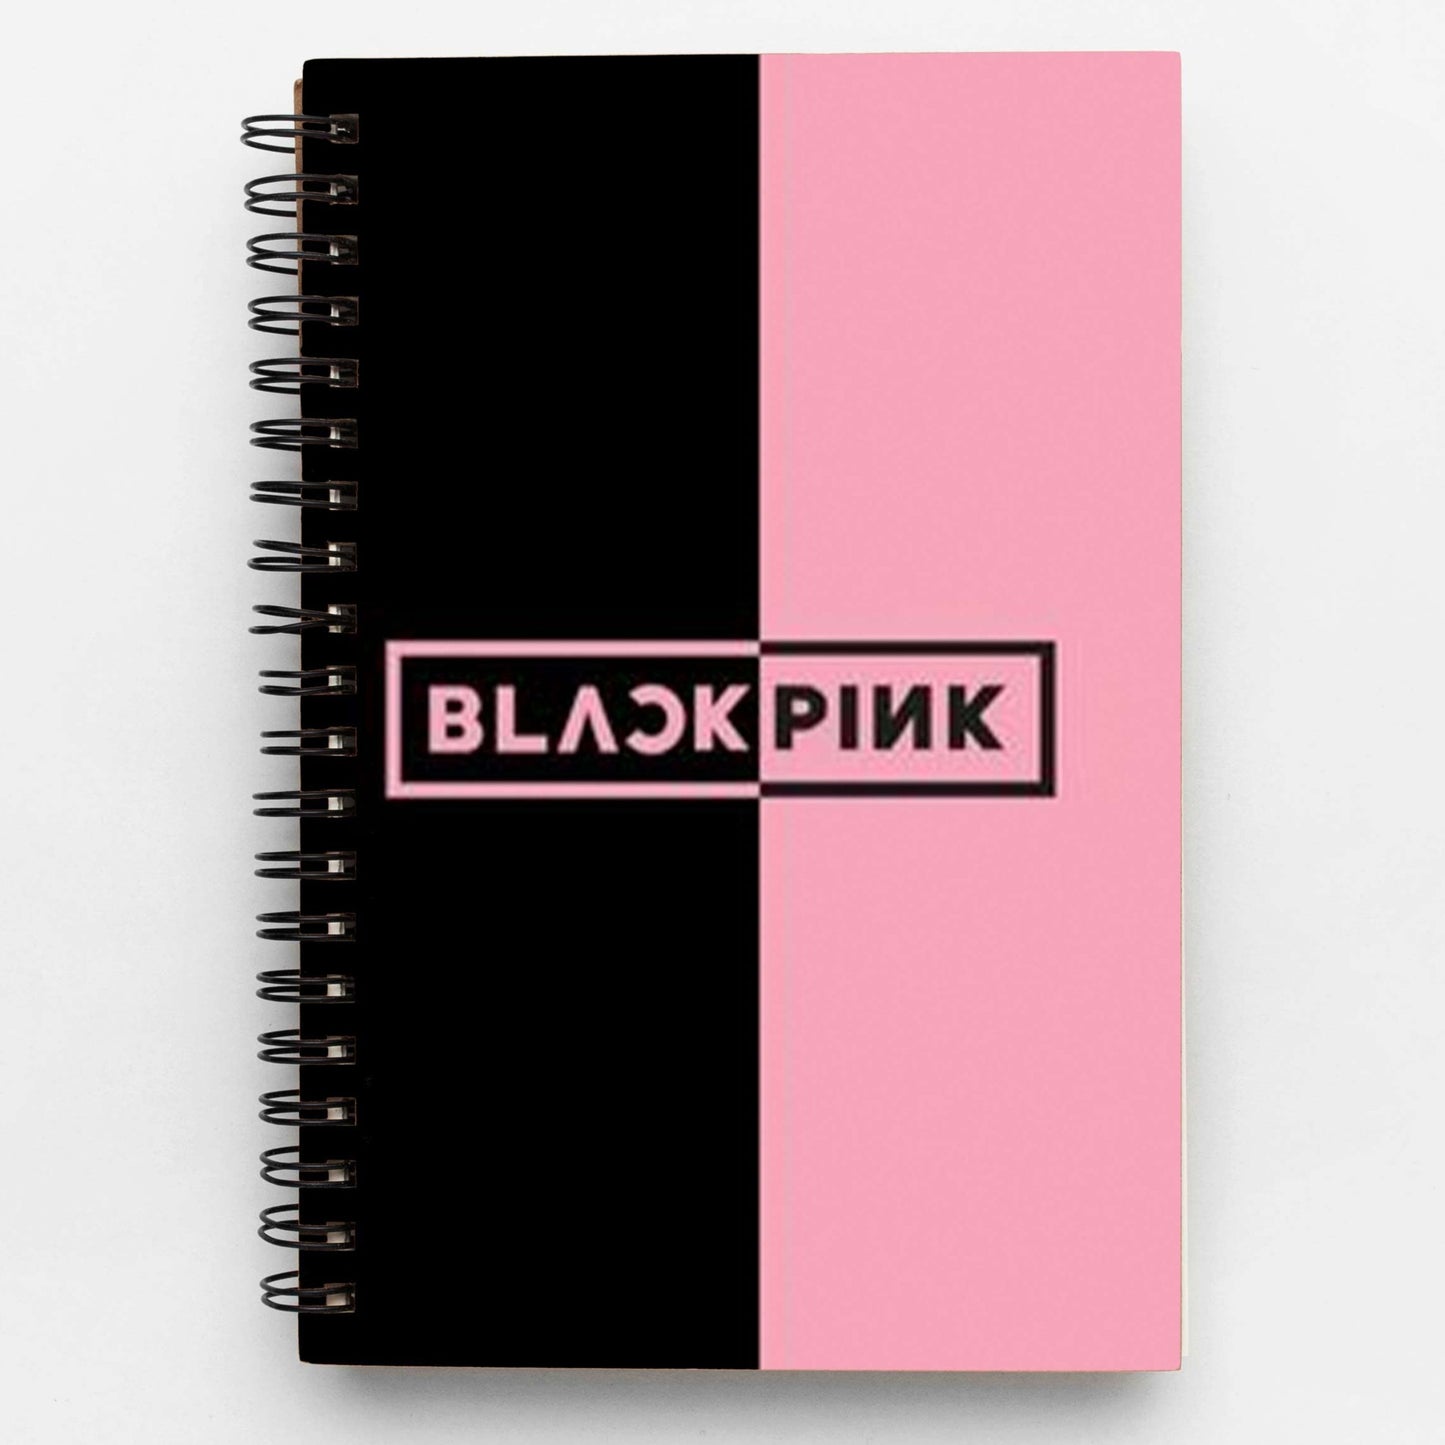 Blackpink Wiro notebook